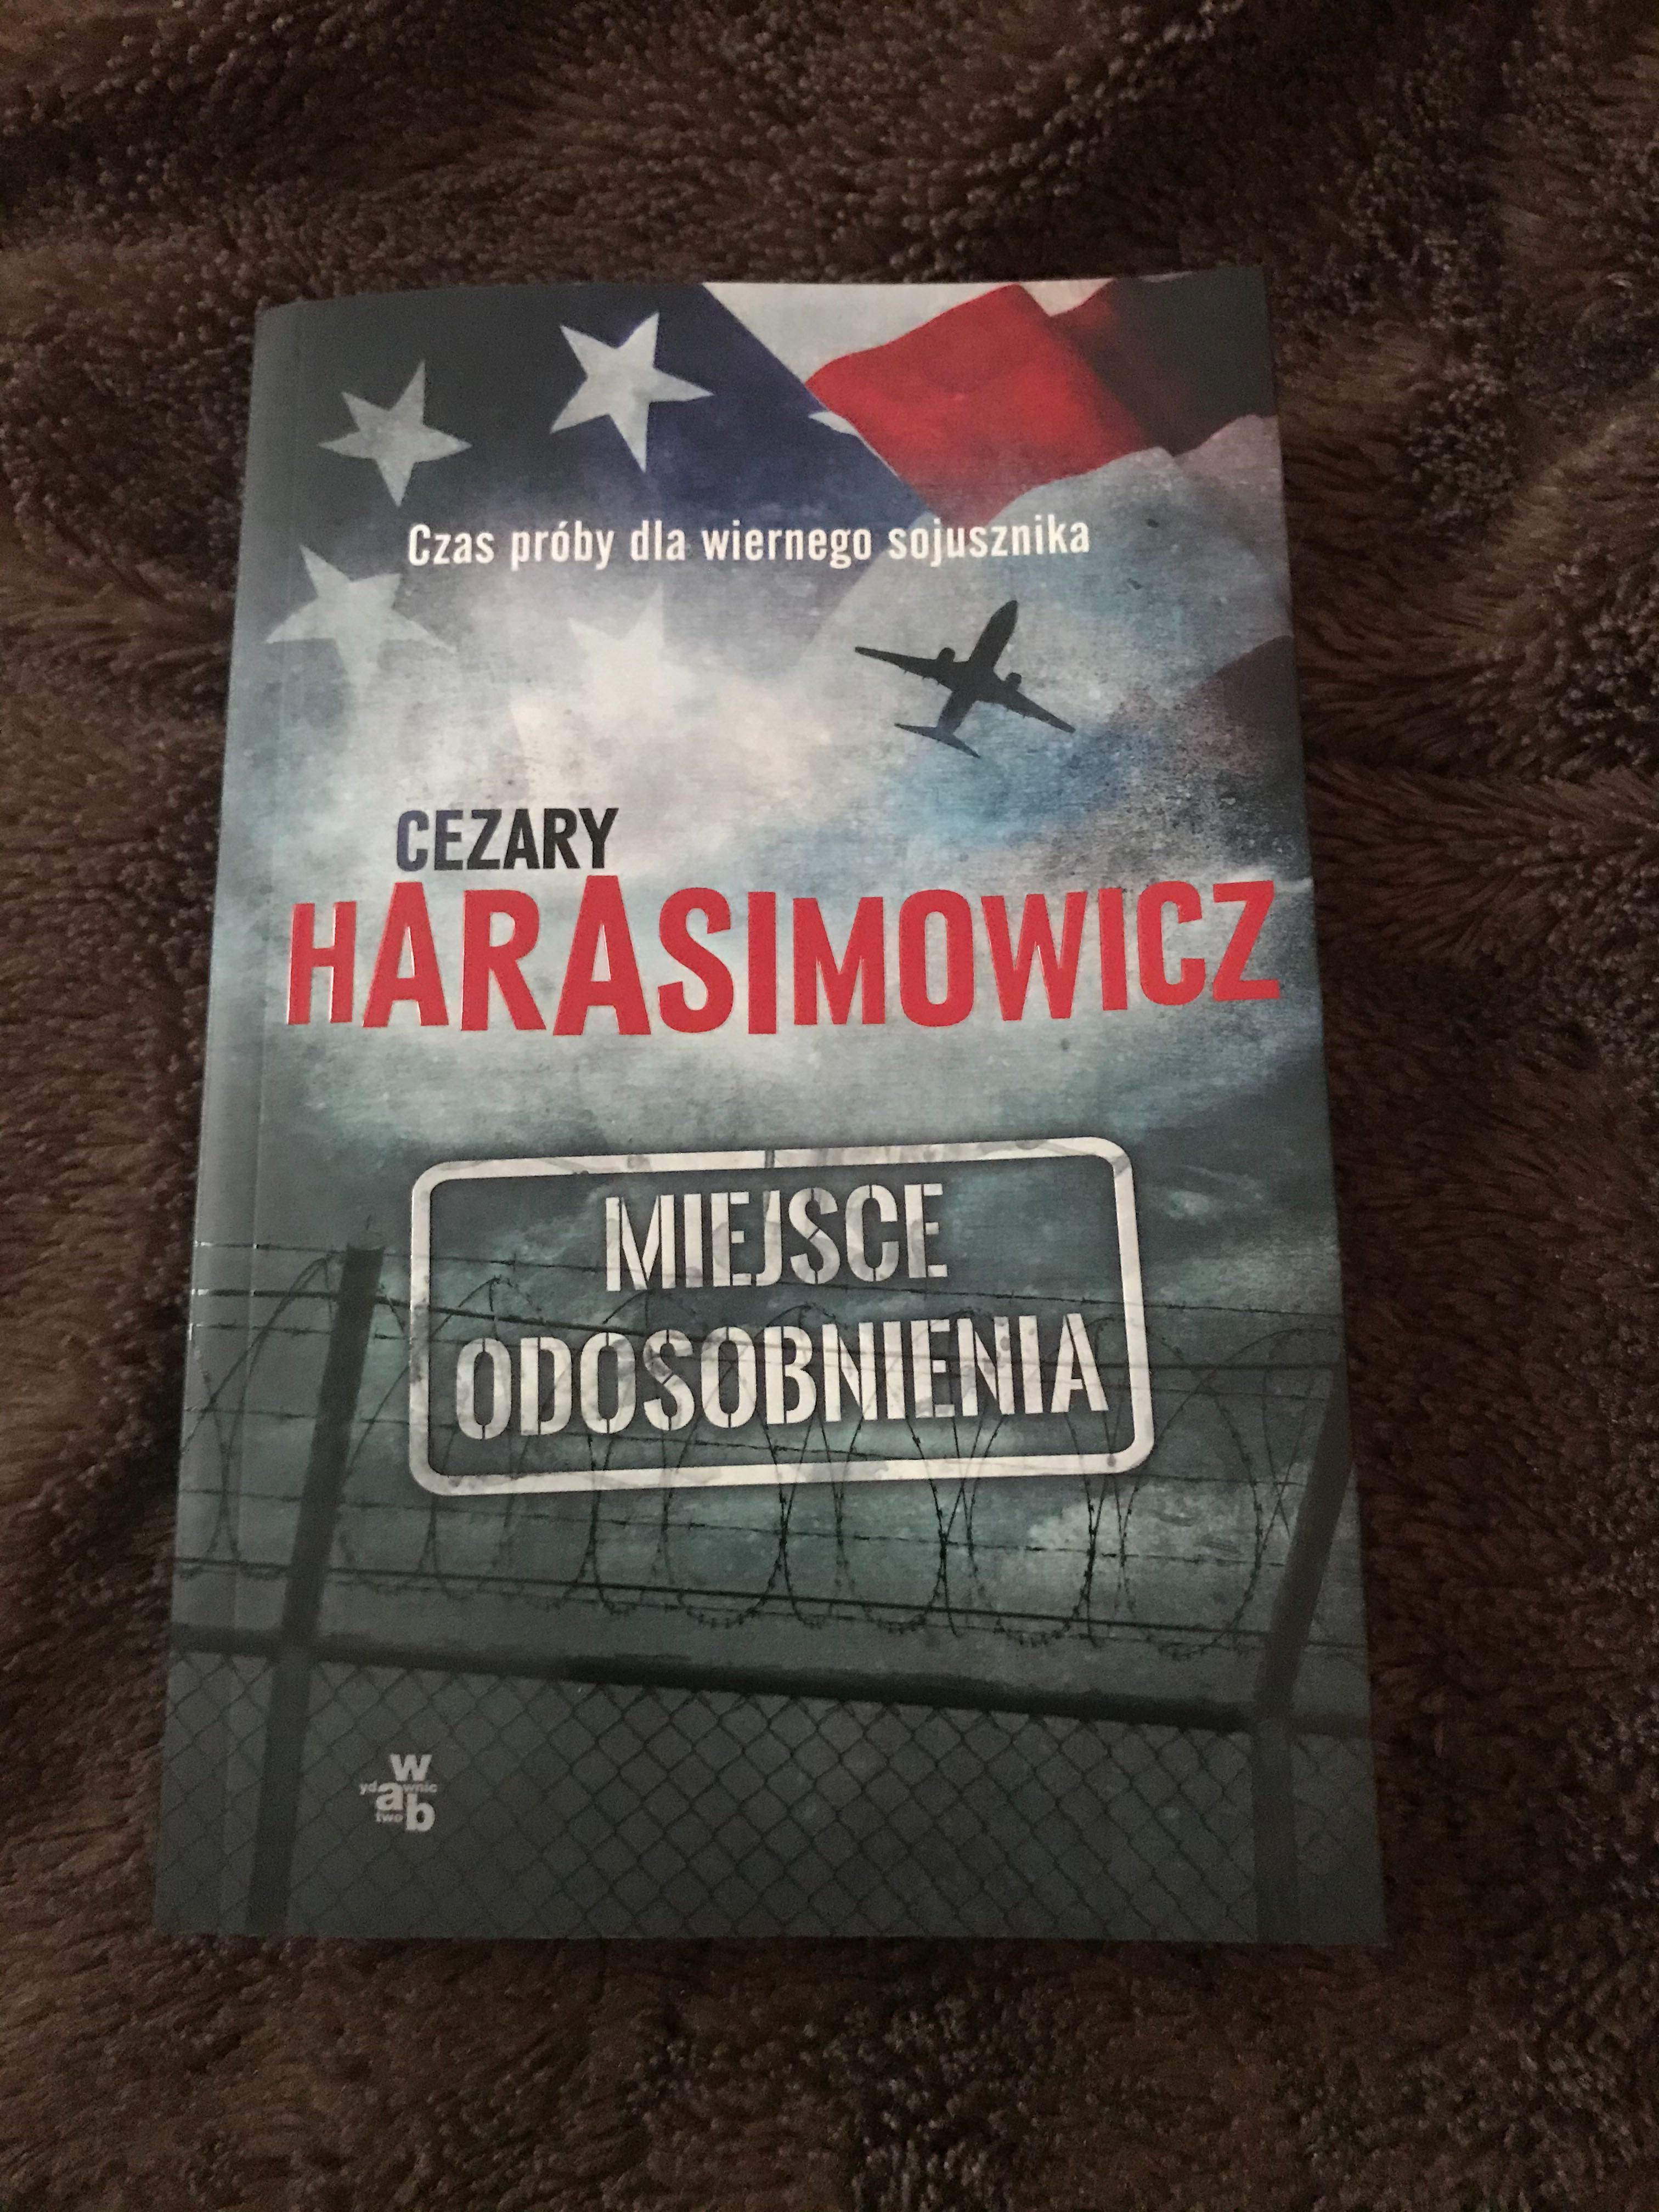 Książka “Miejsce odosobnienia” Cezary Harasimowicz